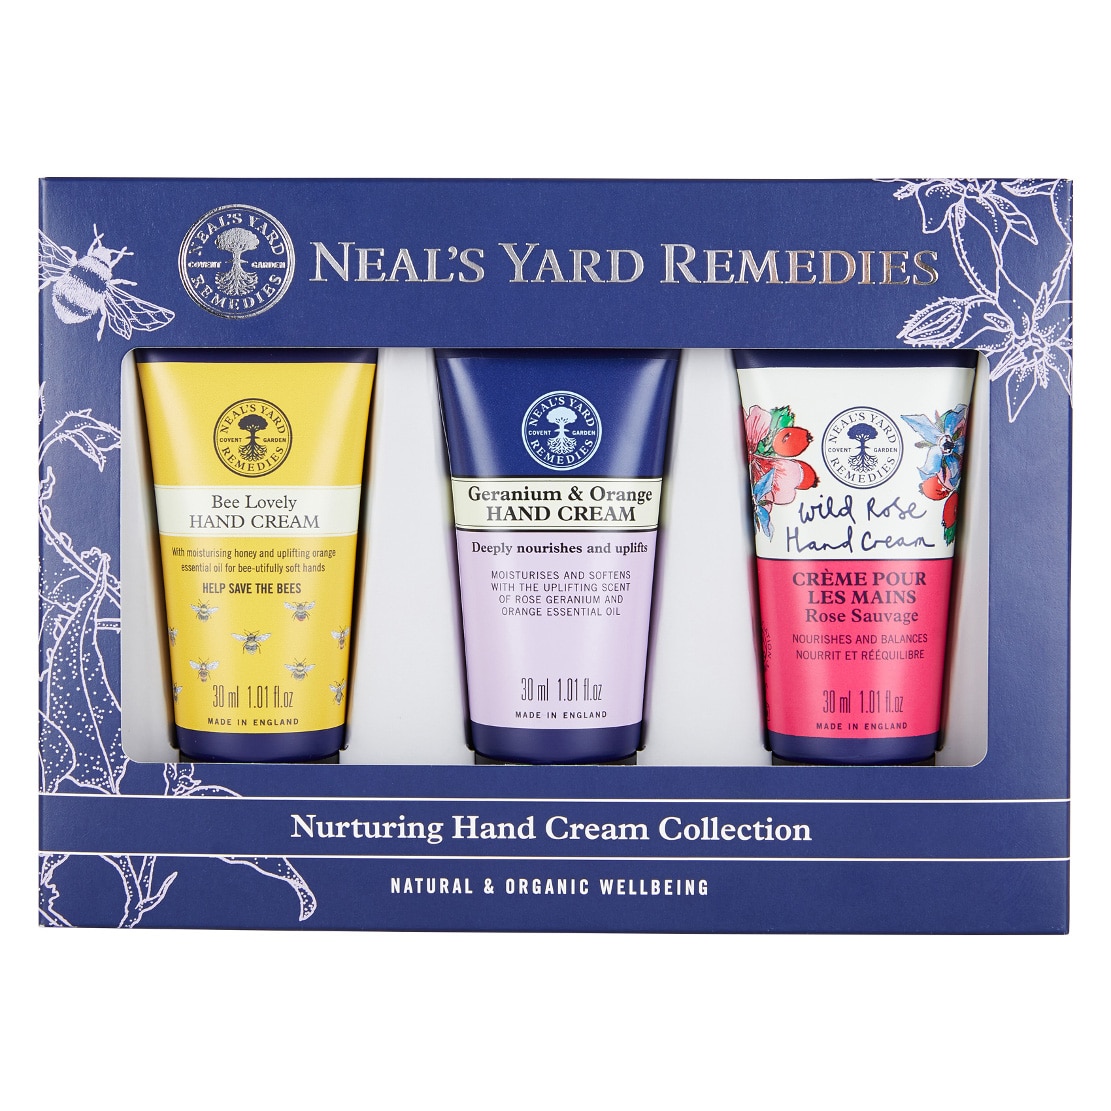 Neal's Yard Remedies Nurturing Hand Cream Collection